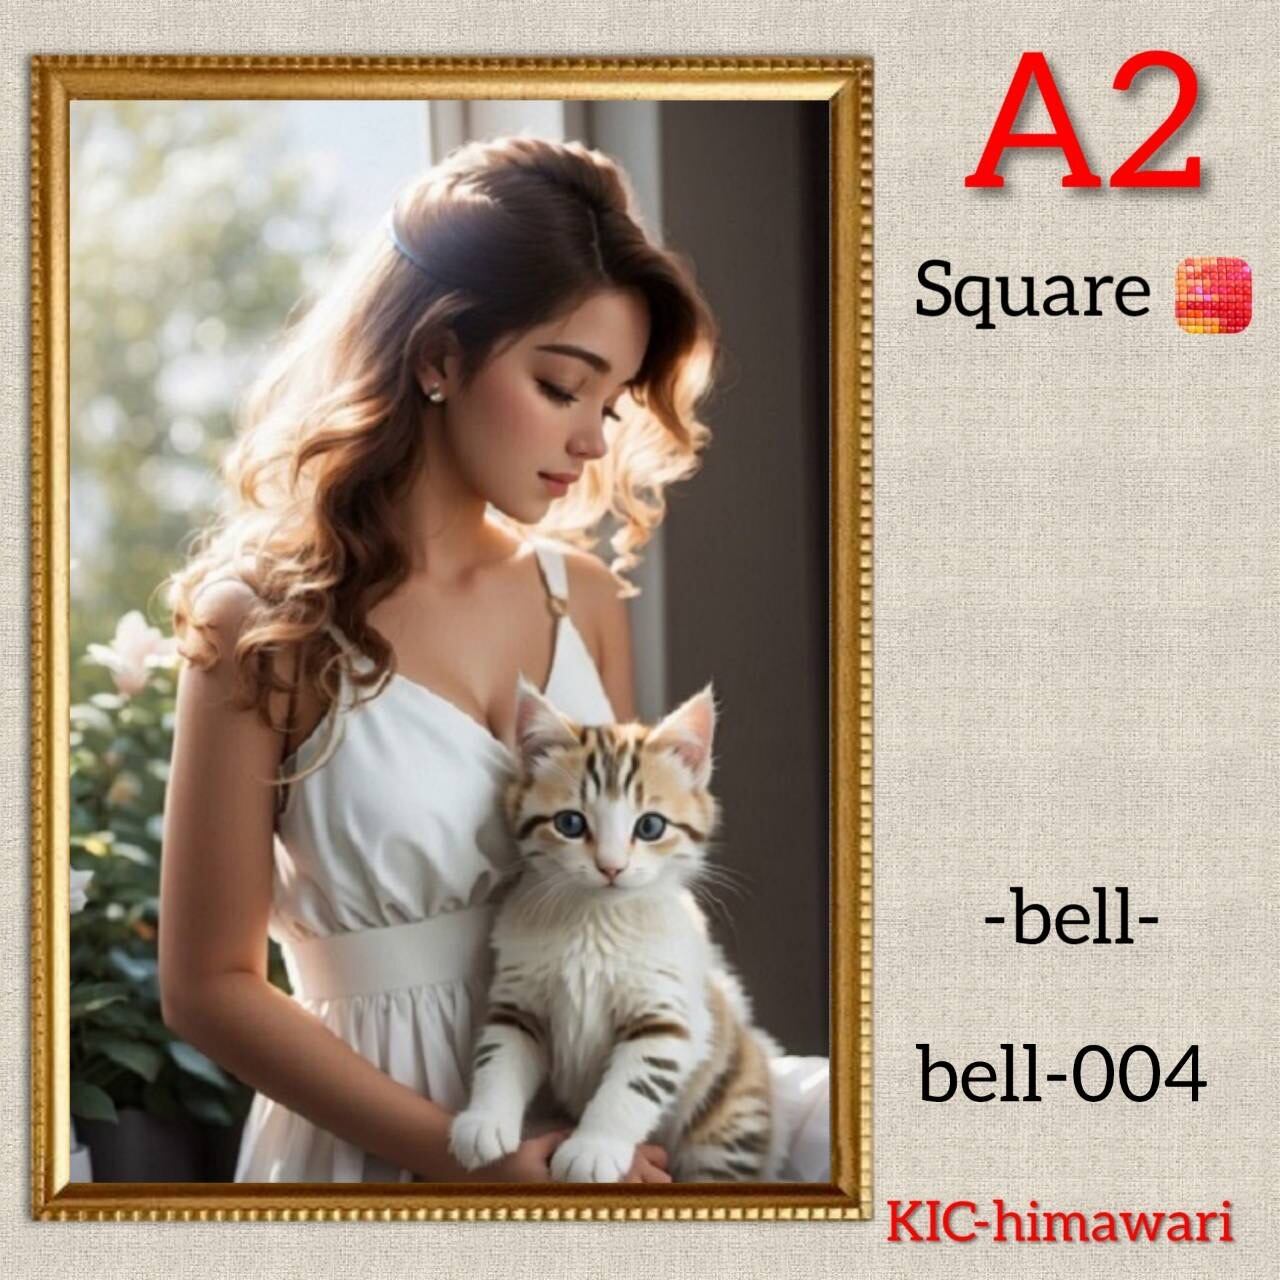 A2サイズ 四角ビーズ【bell-004】ダイヤモンドアート